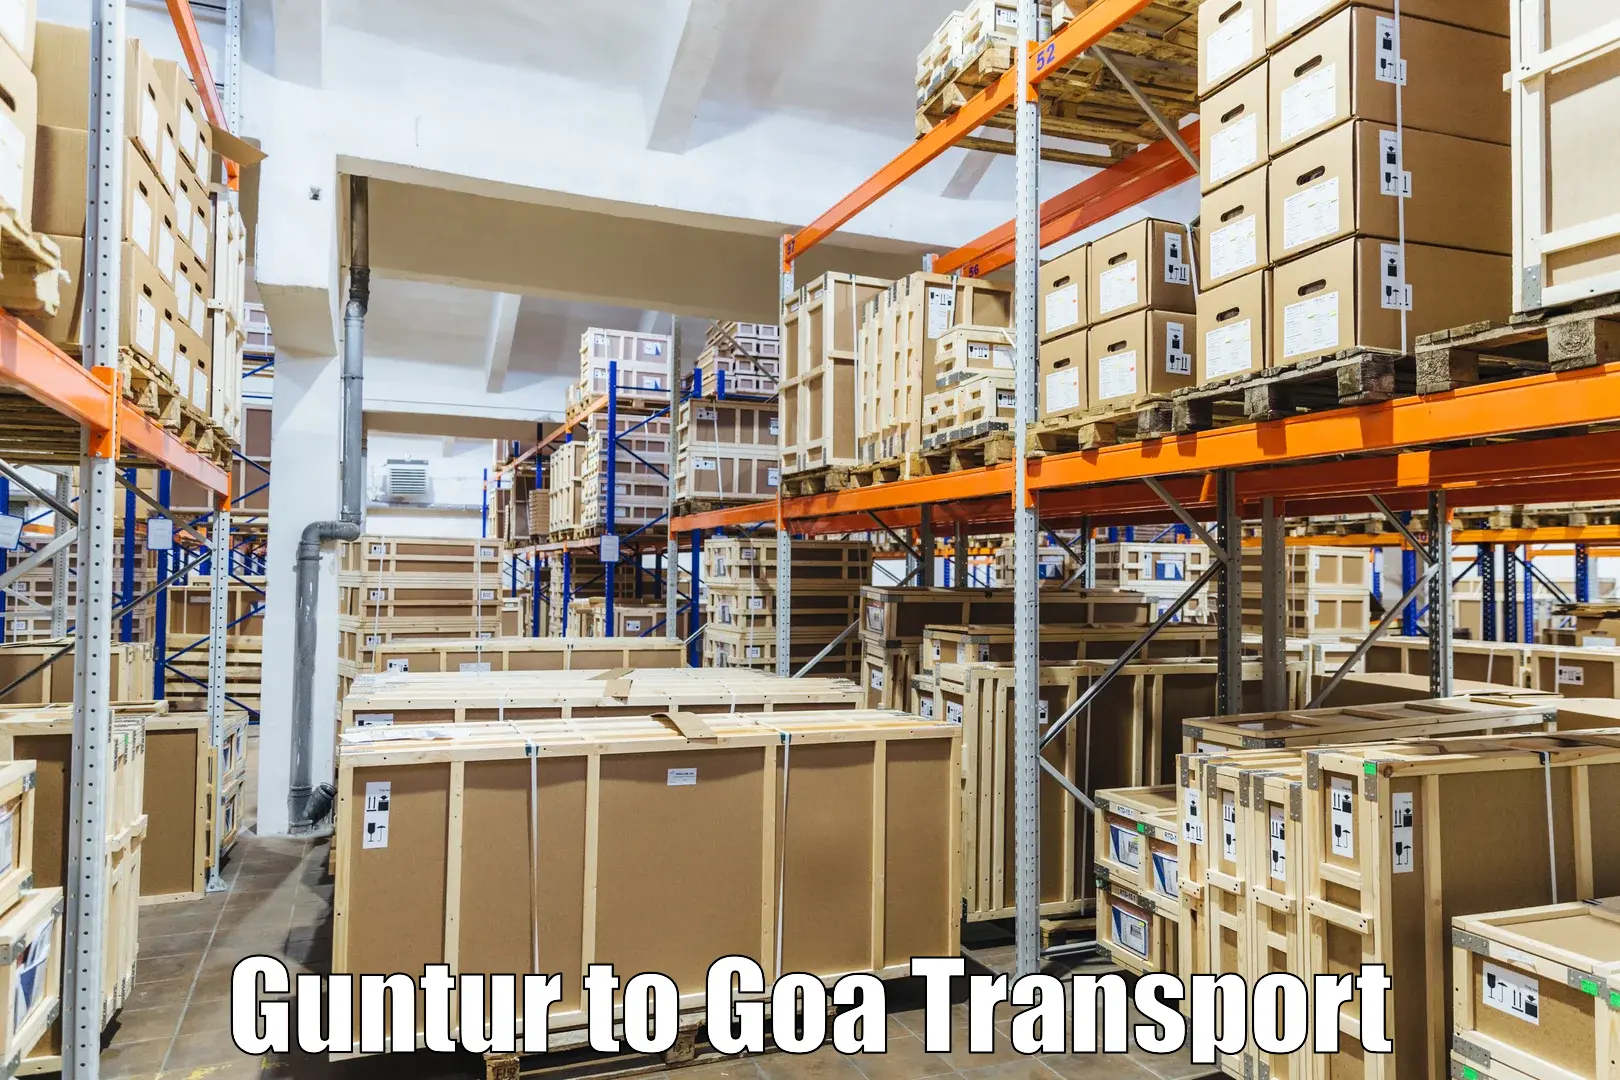 Pick up transport service Guntur to Bicholim